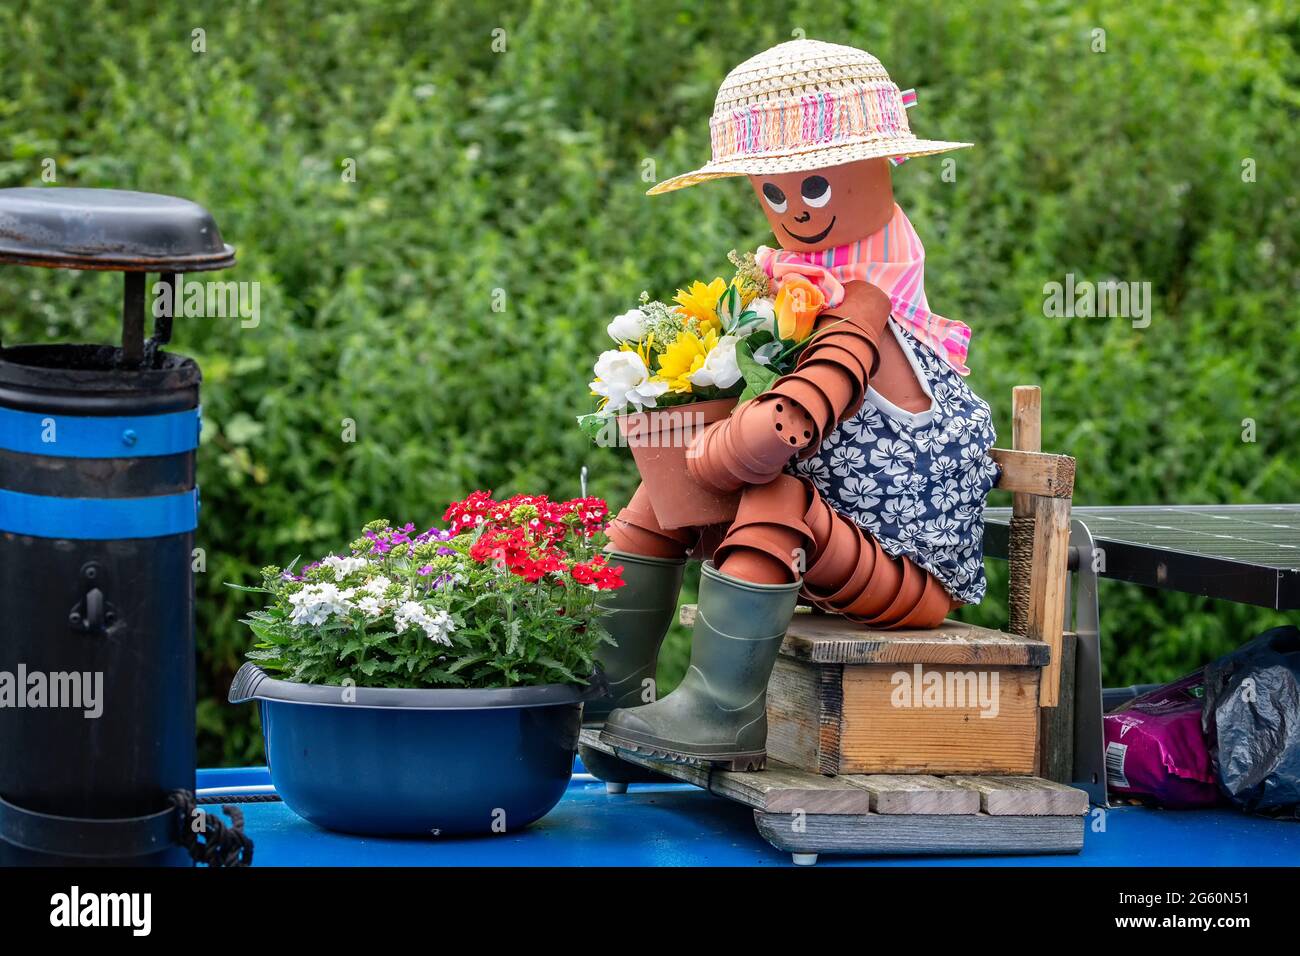 Nahaufnahme einer Frau aus Blumentöpfen, die auf einem Holzsitz sitzt und einen Blumentopf auf einem Kanalboot hält. Stockfoto